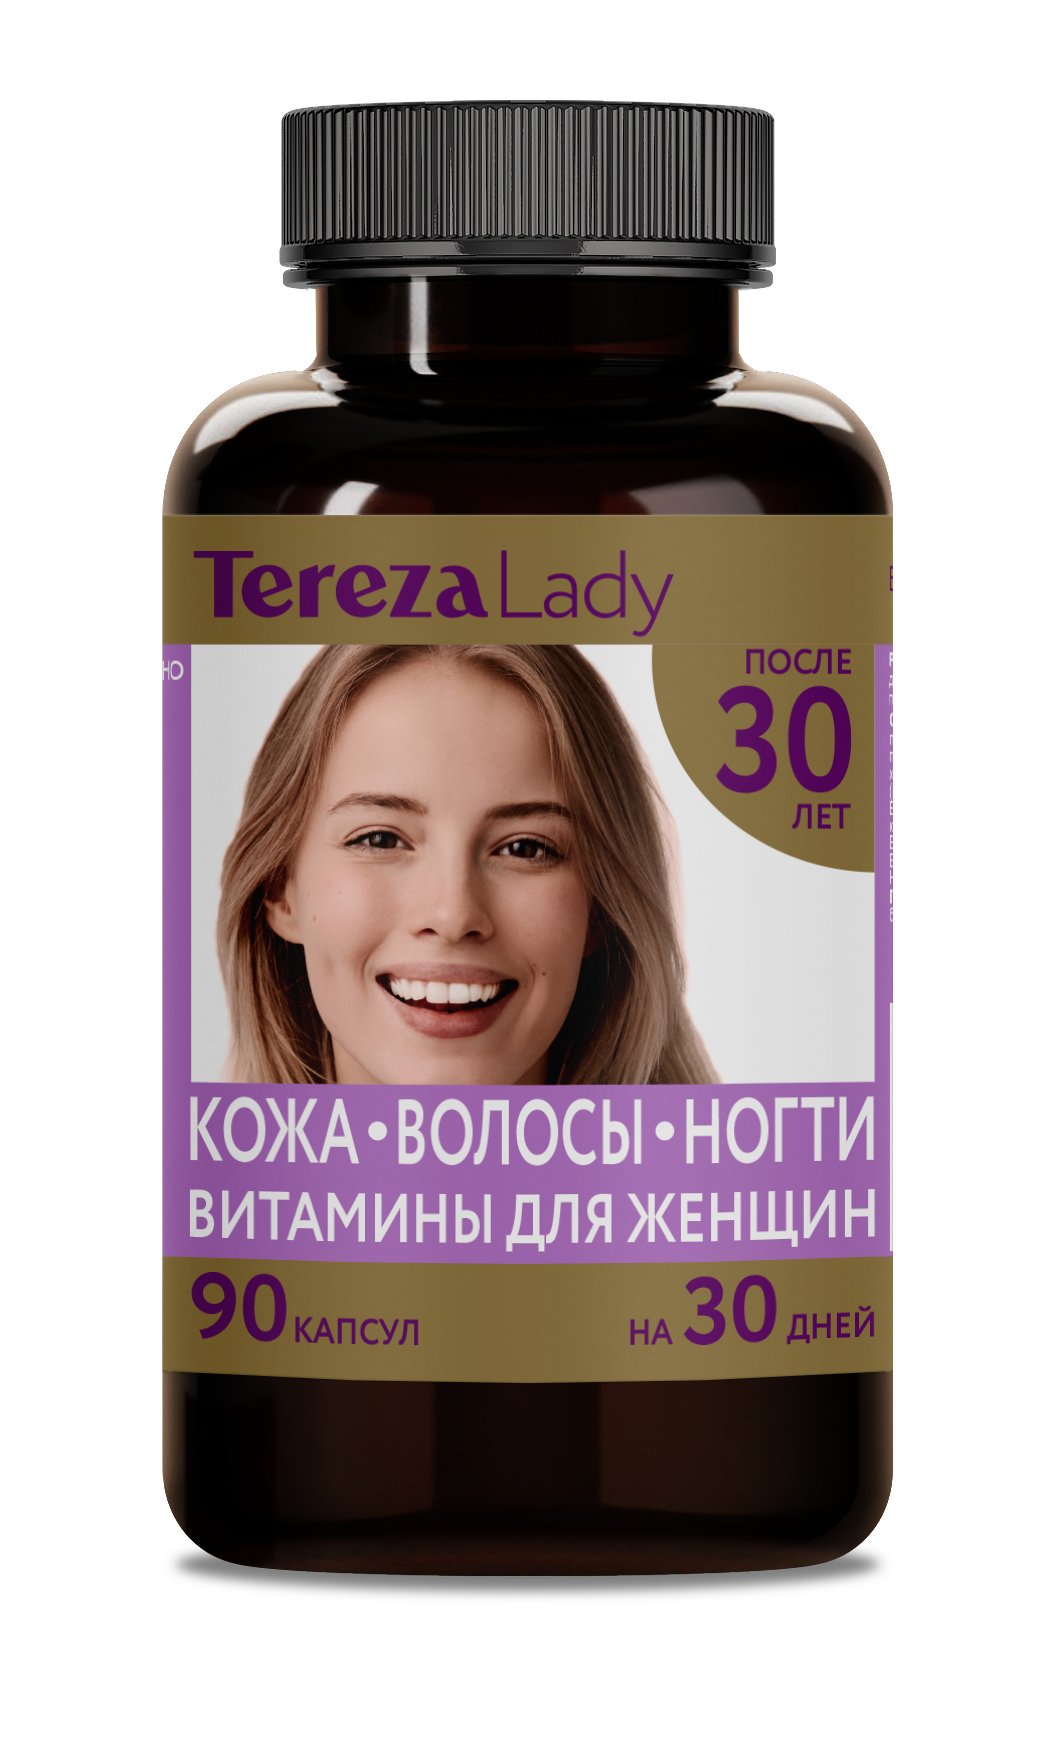 Витамины для женщин 30+ лет комплекс Кожа Волосы Ногти TerezaLady, 90 капсул